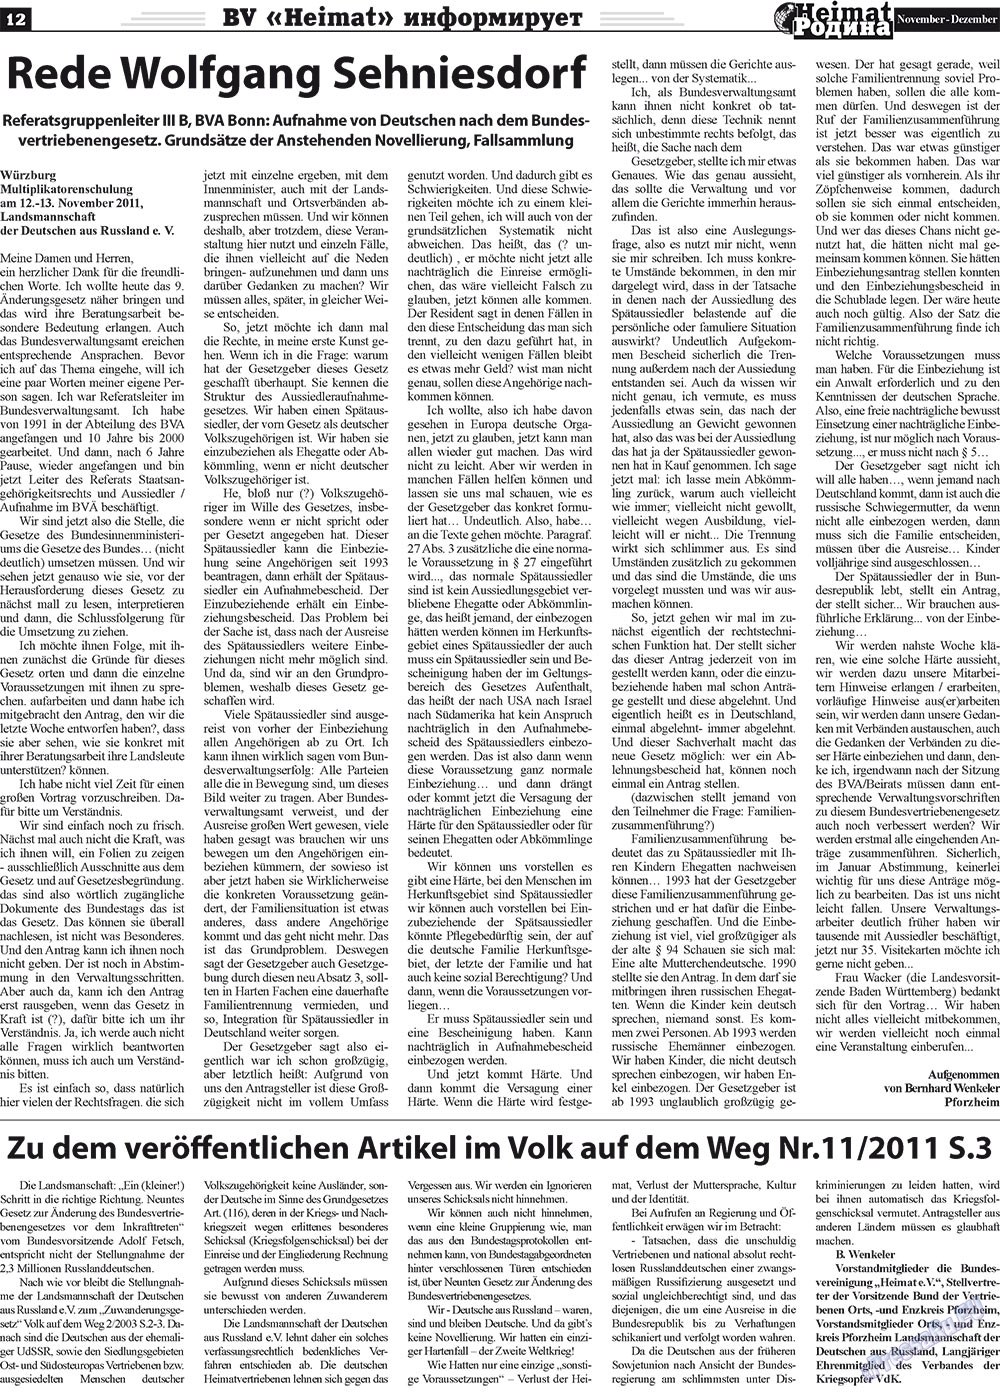 Heimat-Родина (газета). 2011 год, номер 11, стр. 12